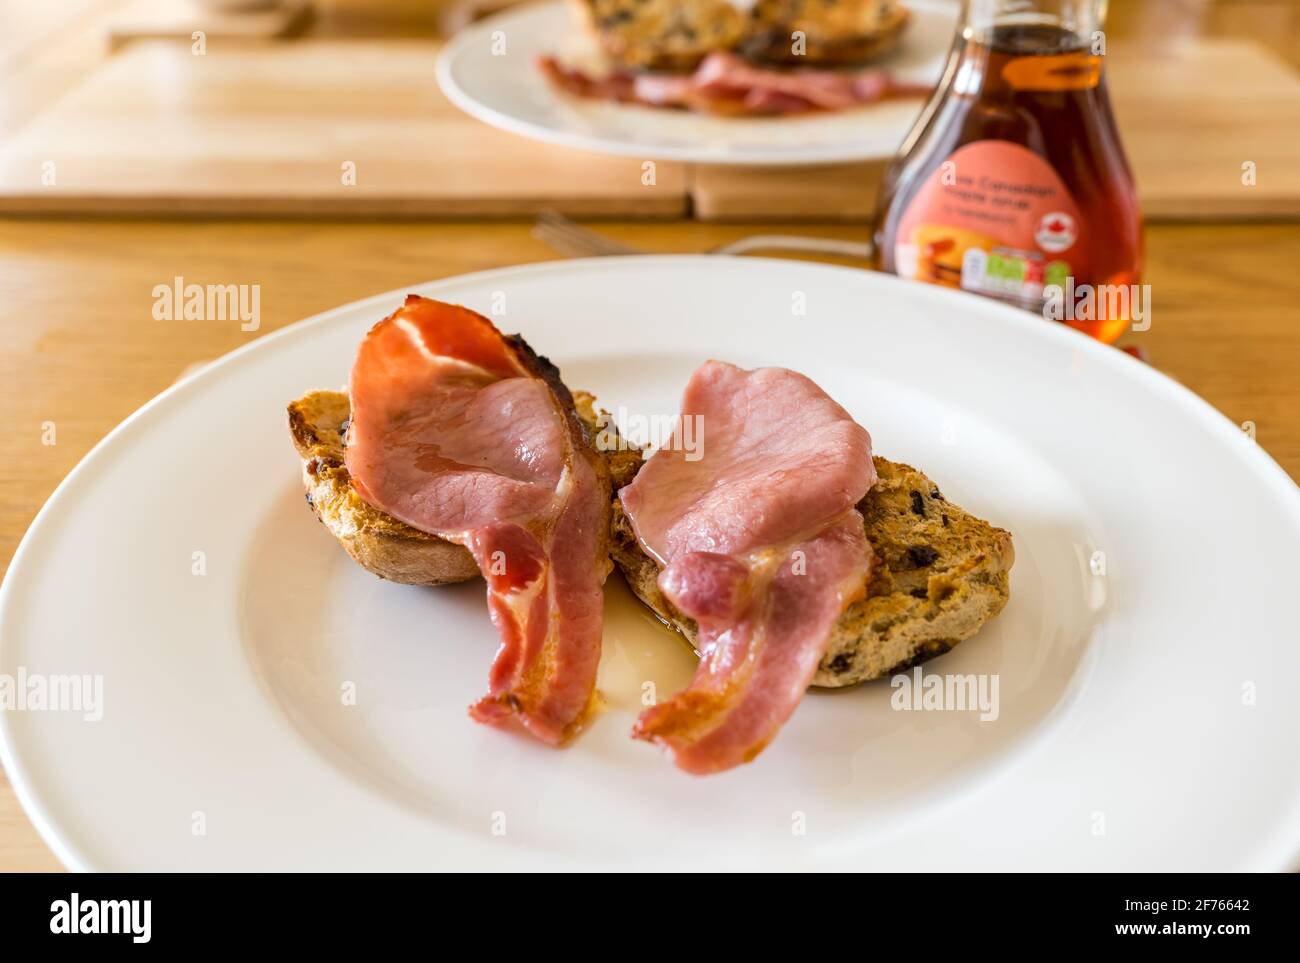 Desayuno o brunch servido de bollos de cruz calientes con bacon y jarabe de arce en un plato blanco Foto de stock